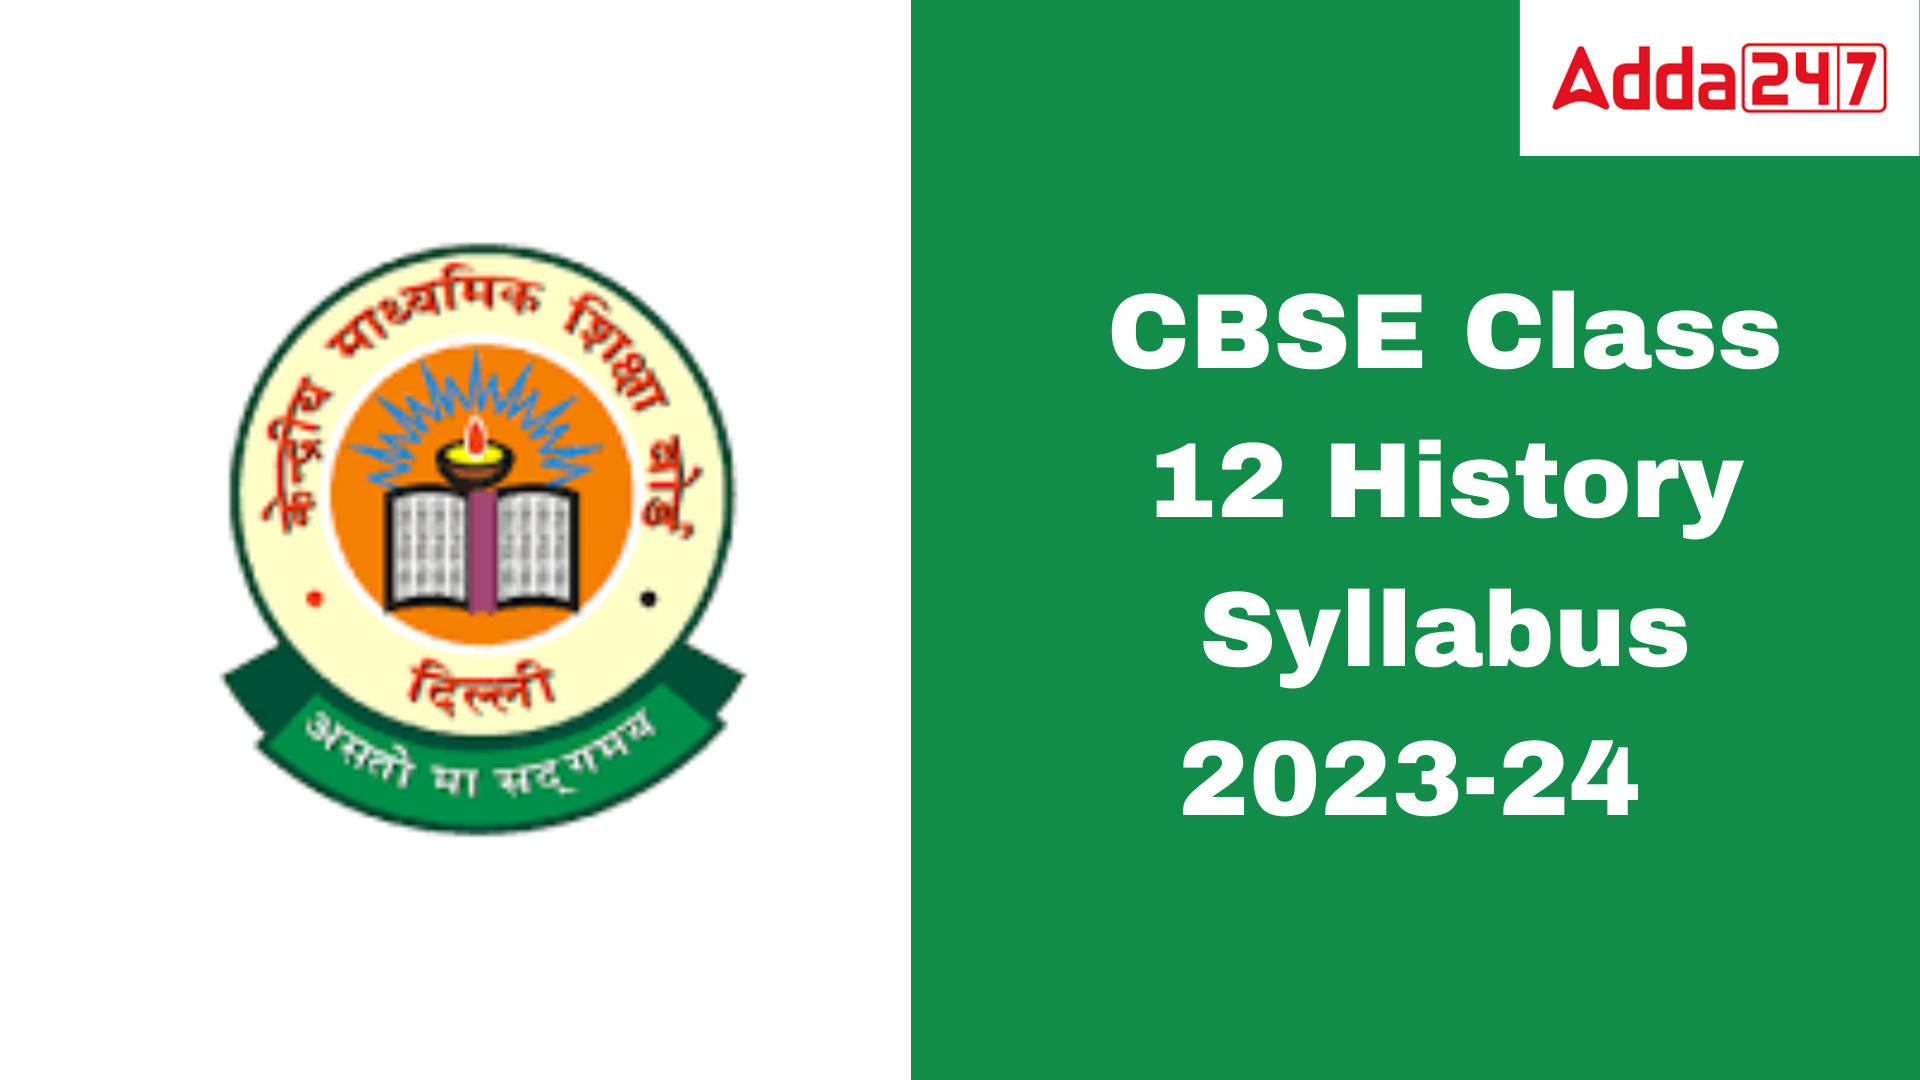 CBSE Class 12 History Syllabus 2023-24